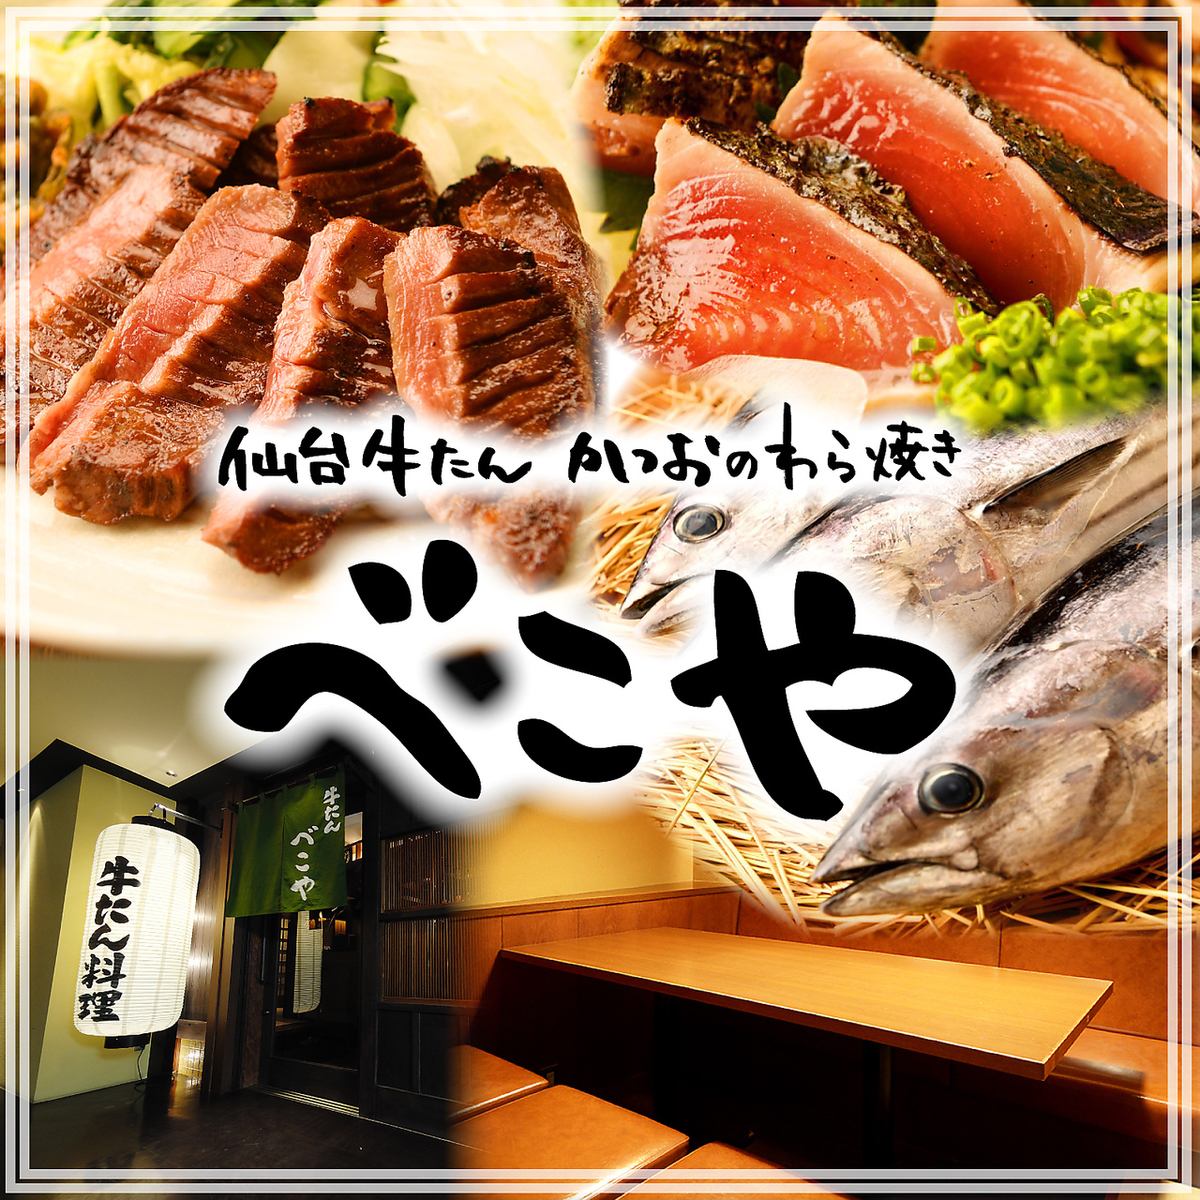 歡迎會和送別會的預約現已開始！提供牛舌料理、草烤鰹魚、時令日本料理。